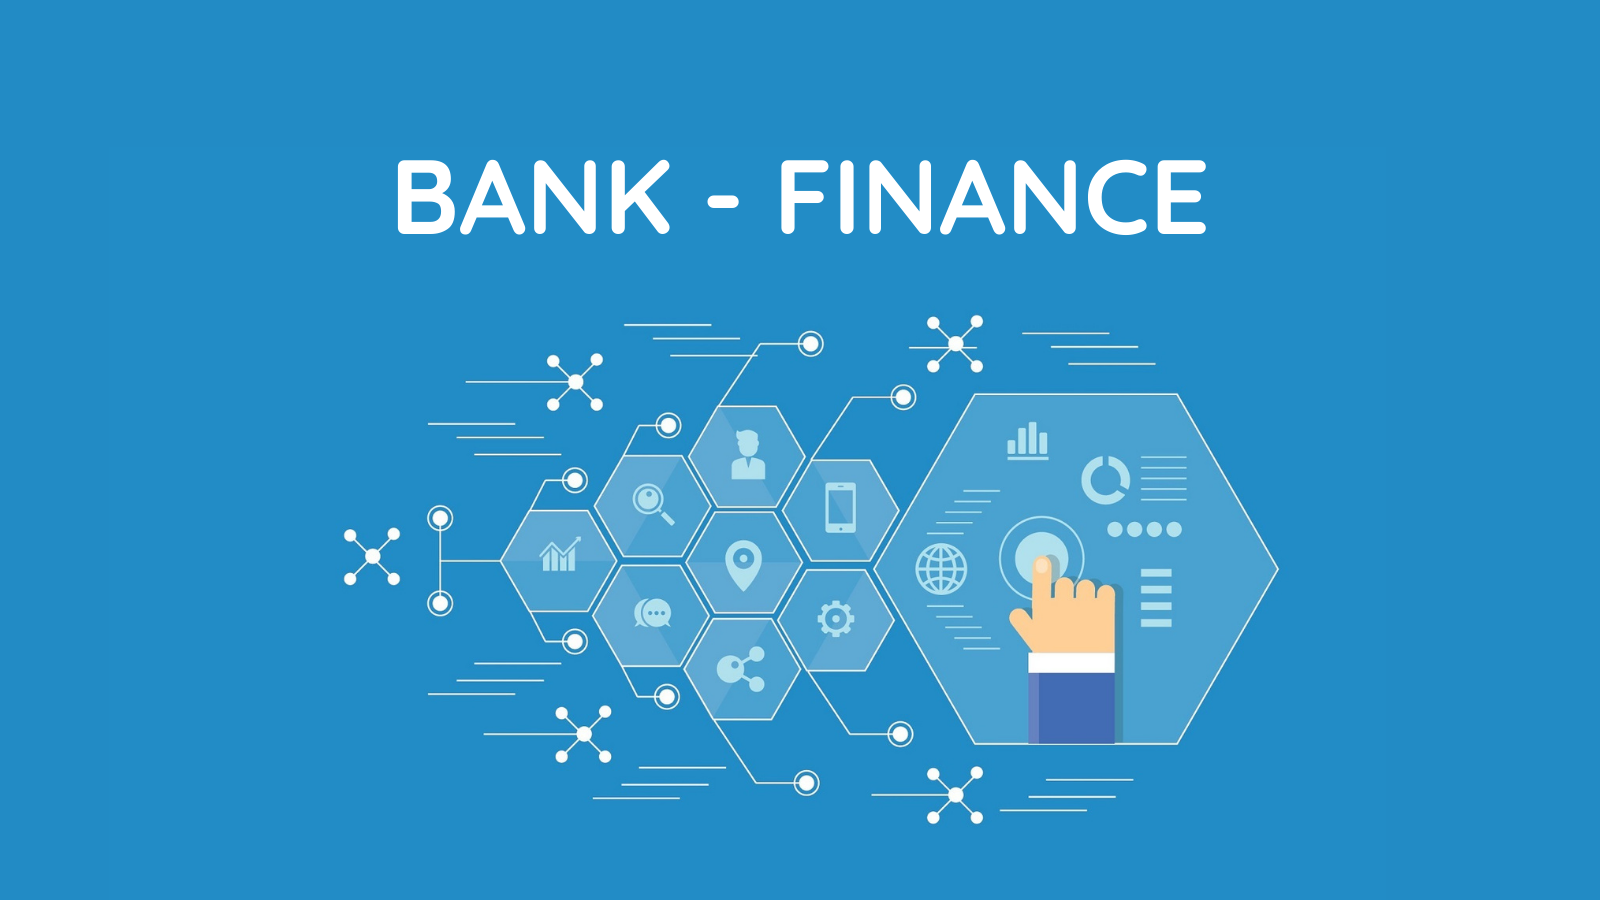 Bank – Finance